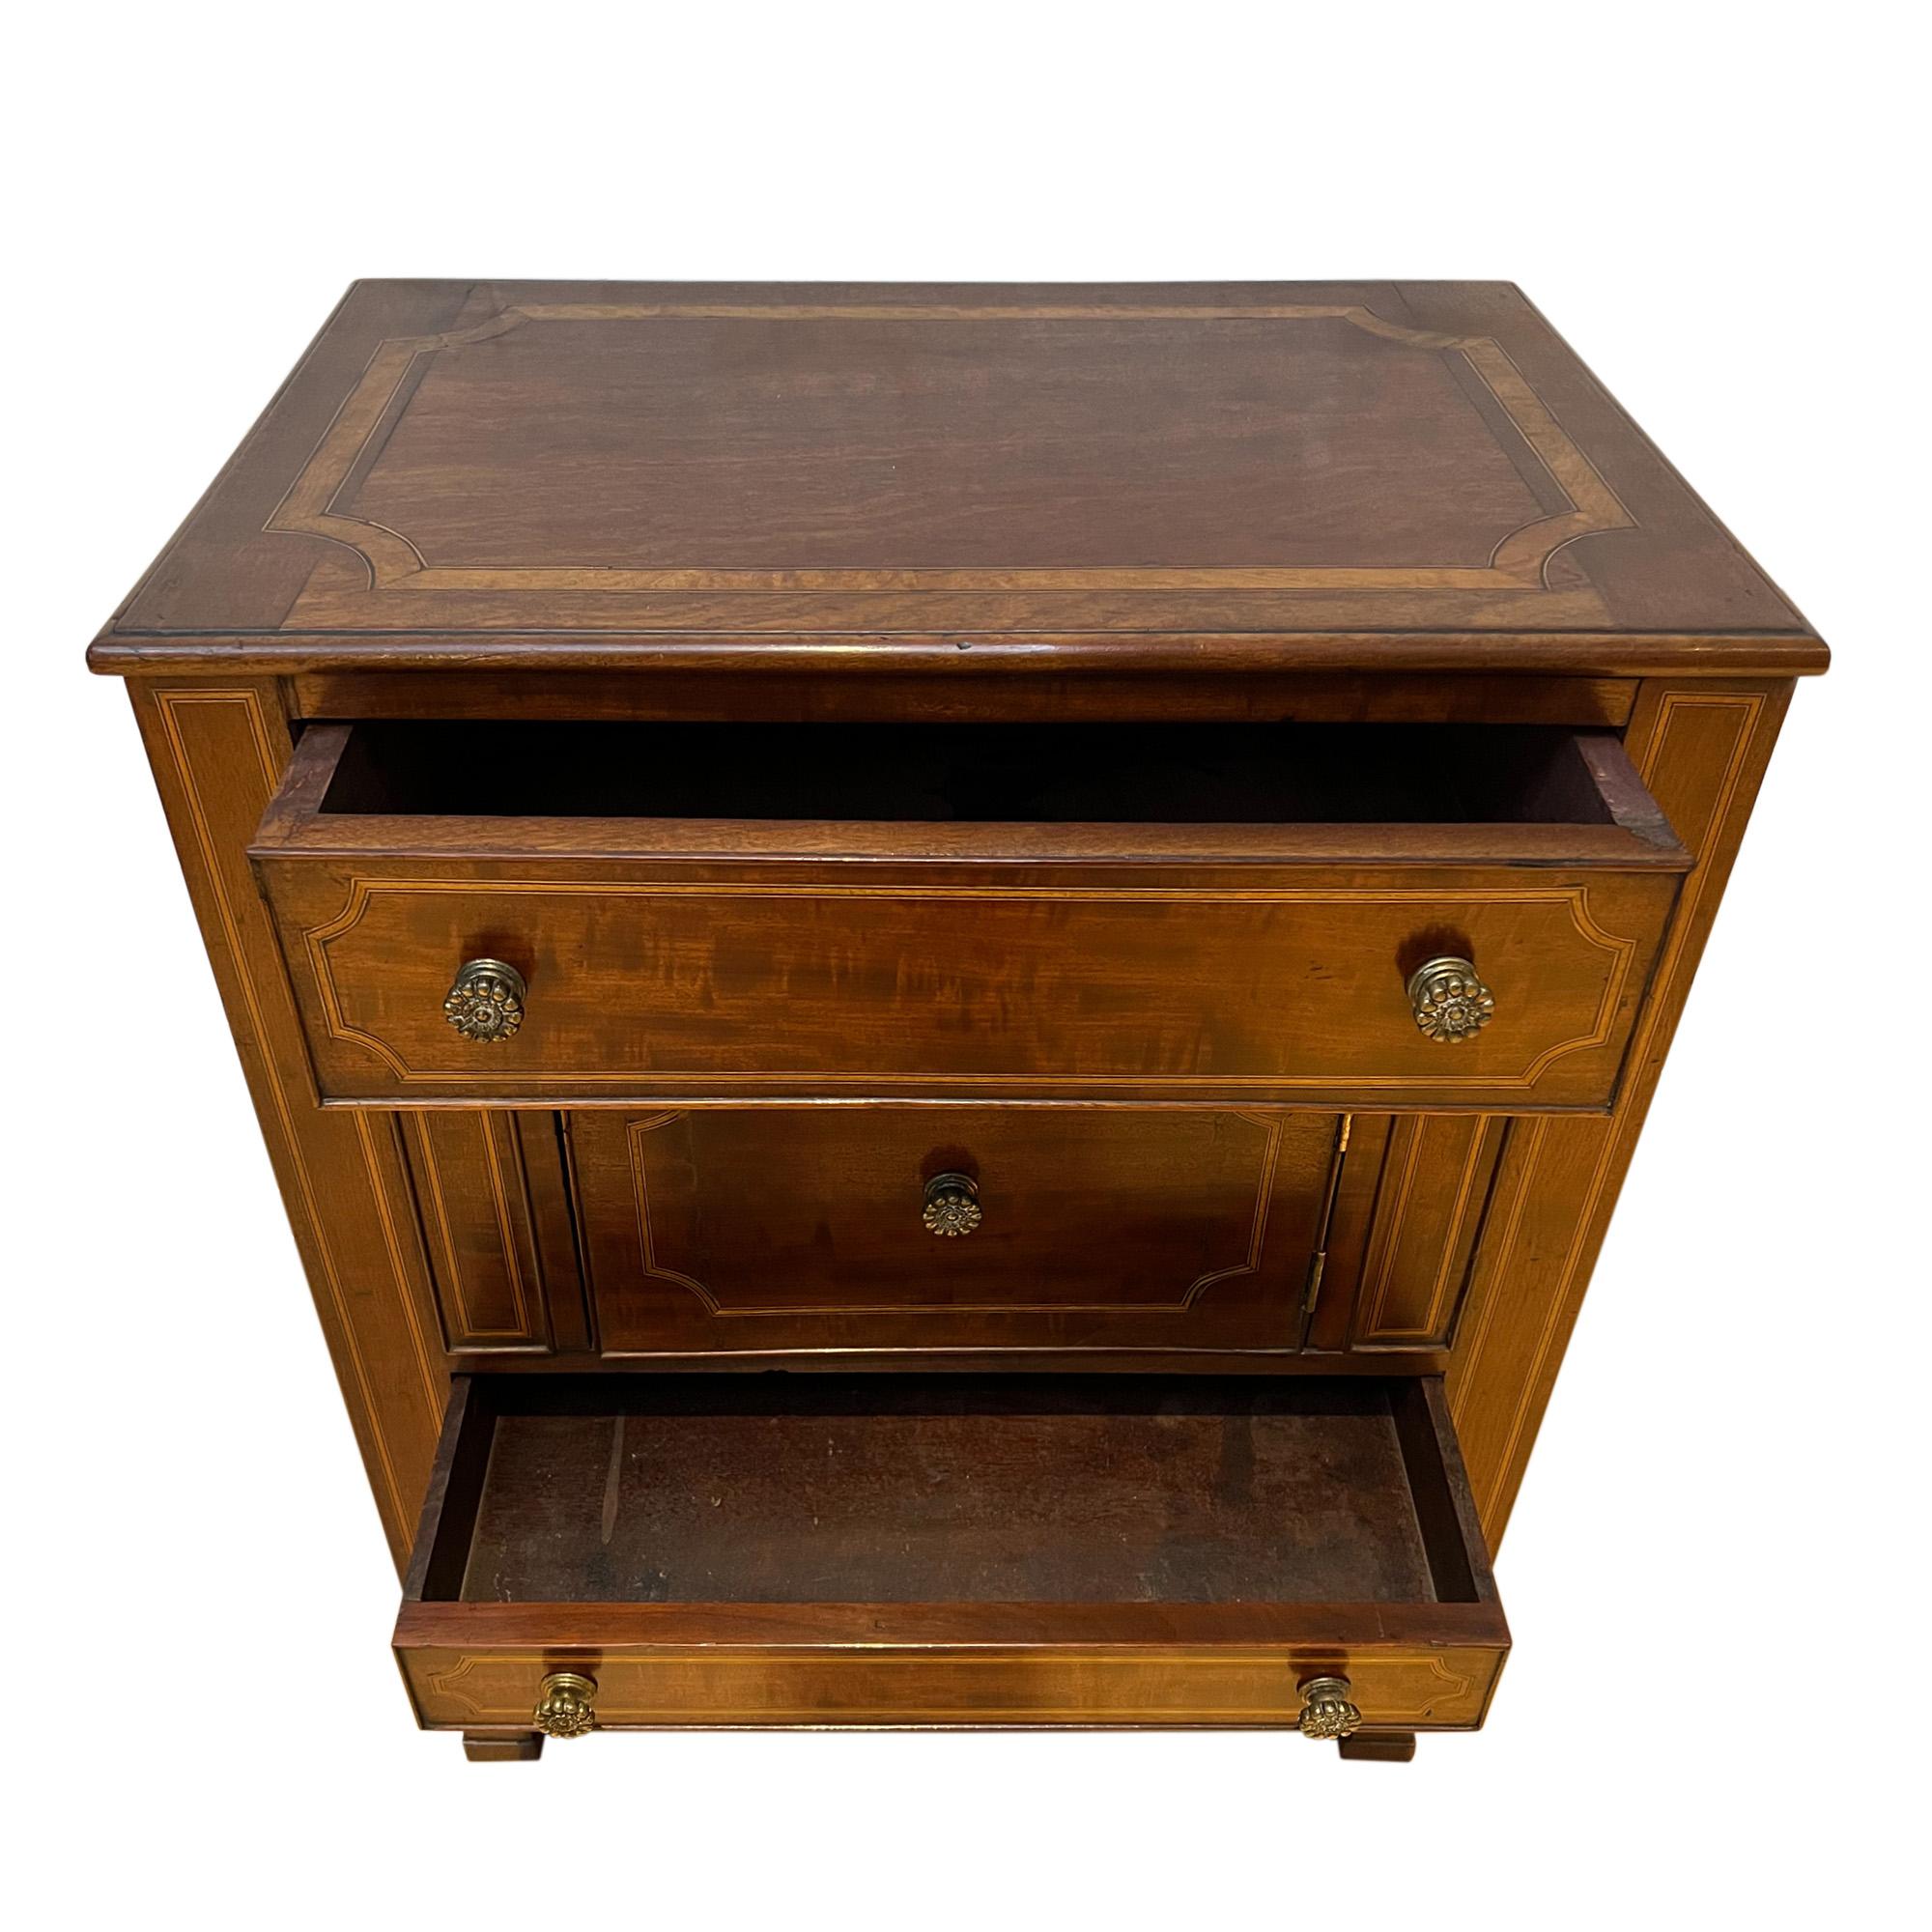 Dieser hübsche kleine Nachttisch oder Dielenschrank wurde um 1900 in Frankreich hergestellt. 

Gefertigt aus Nussbaumholz, mit Satinholzbespannung. 

Eine elegante, dekorative Antiquität.